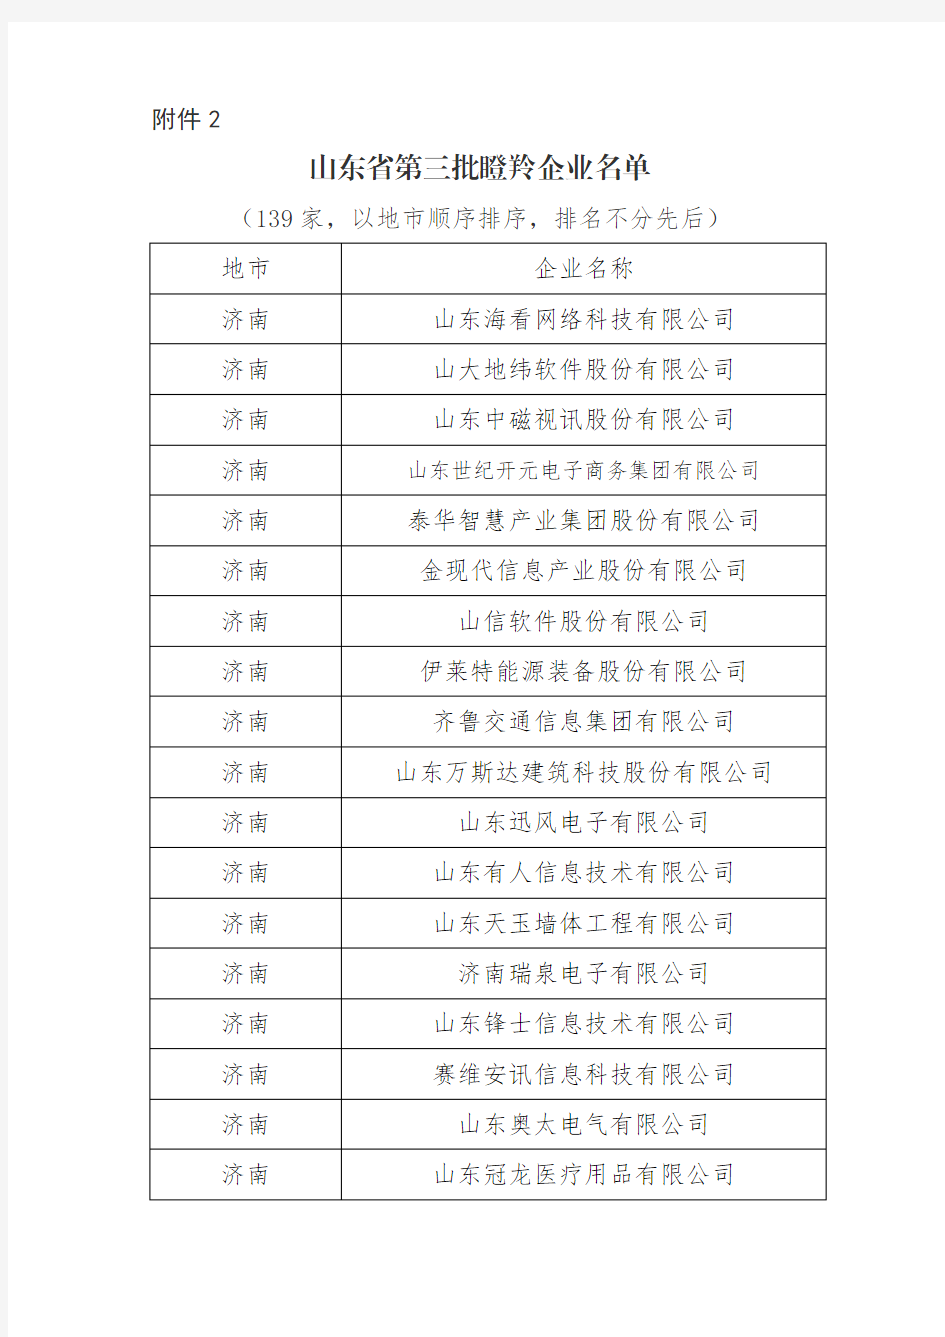 山东省第三批瞪羚企业名单